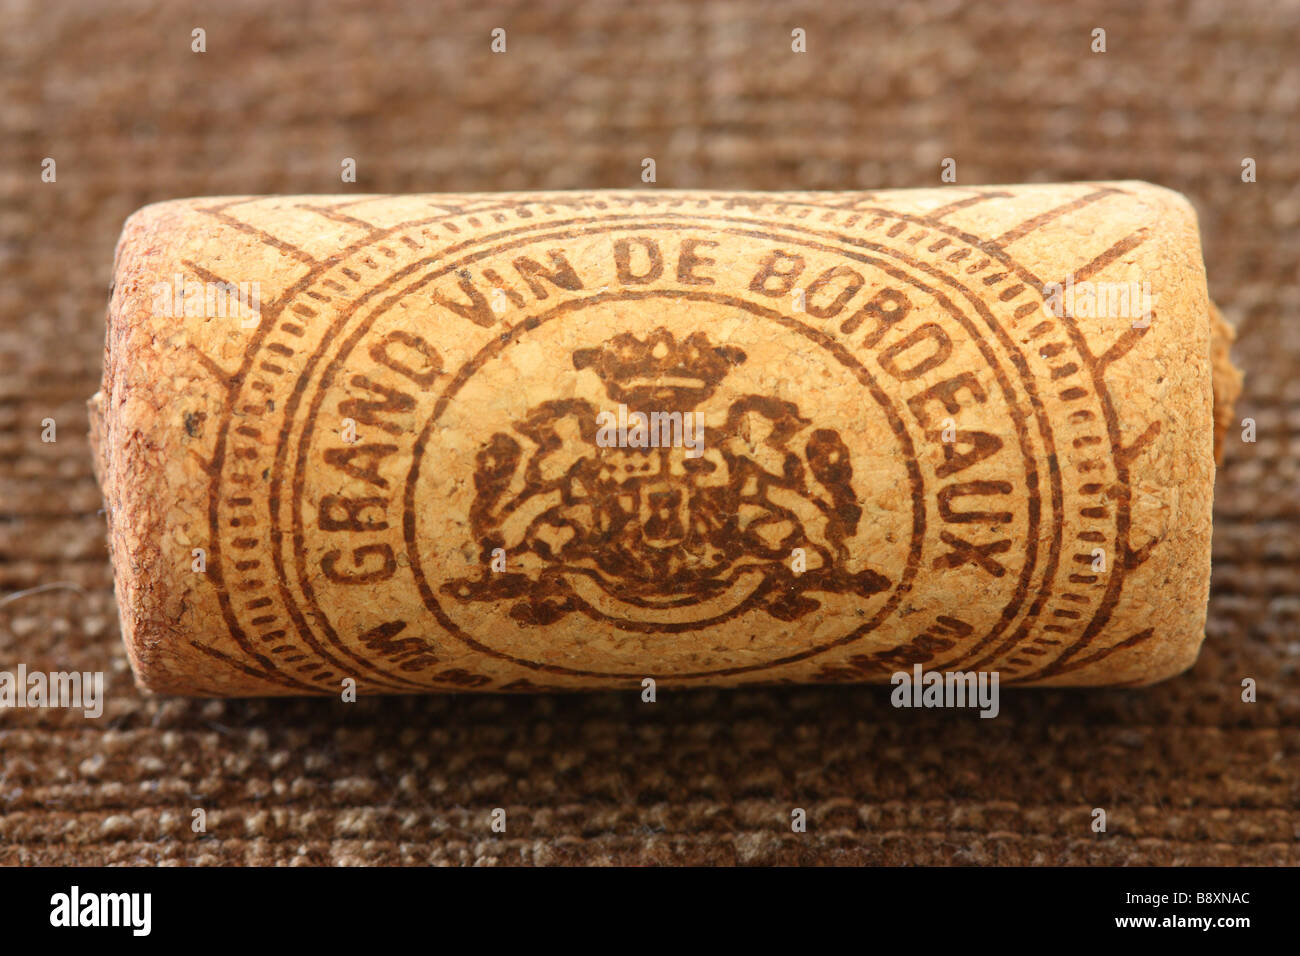 Grand vin de Bordeaux auf Tha Wein Korken crest Stockfoto